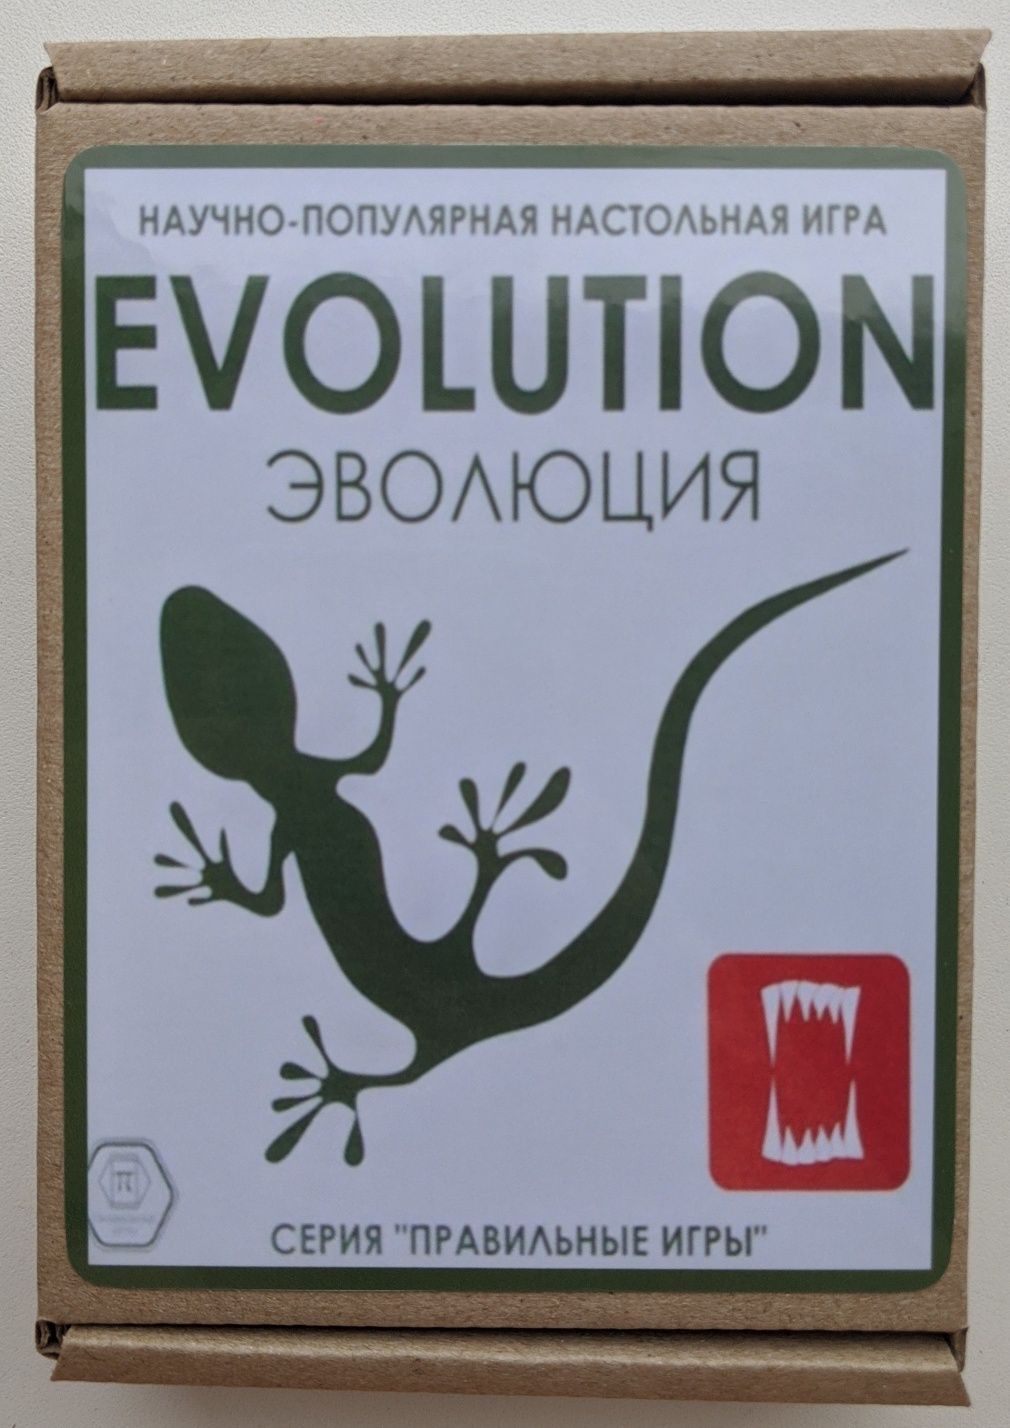 Эволюция игра (все виды)